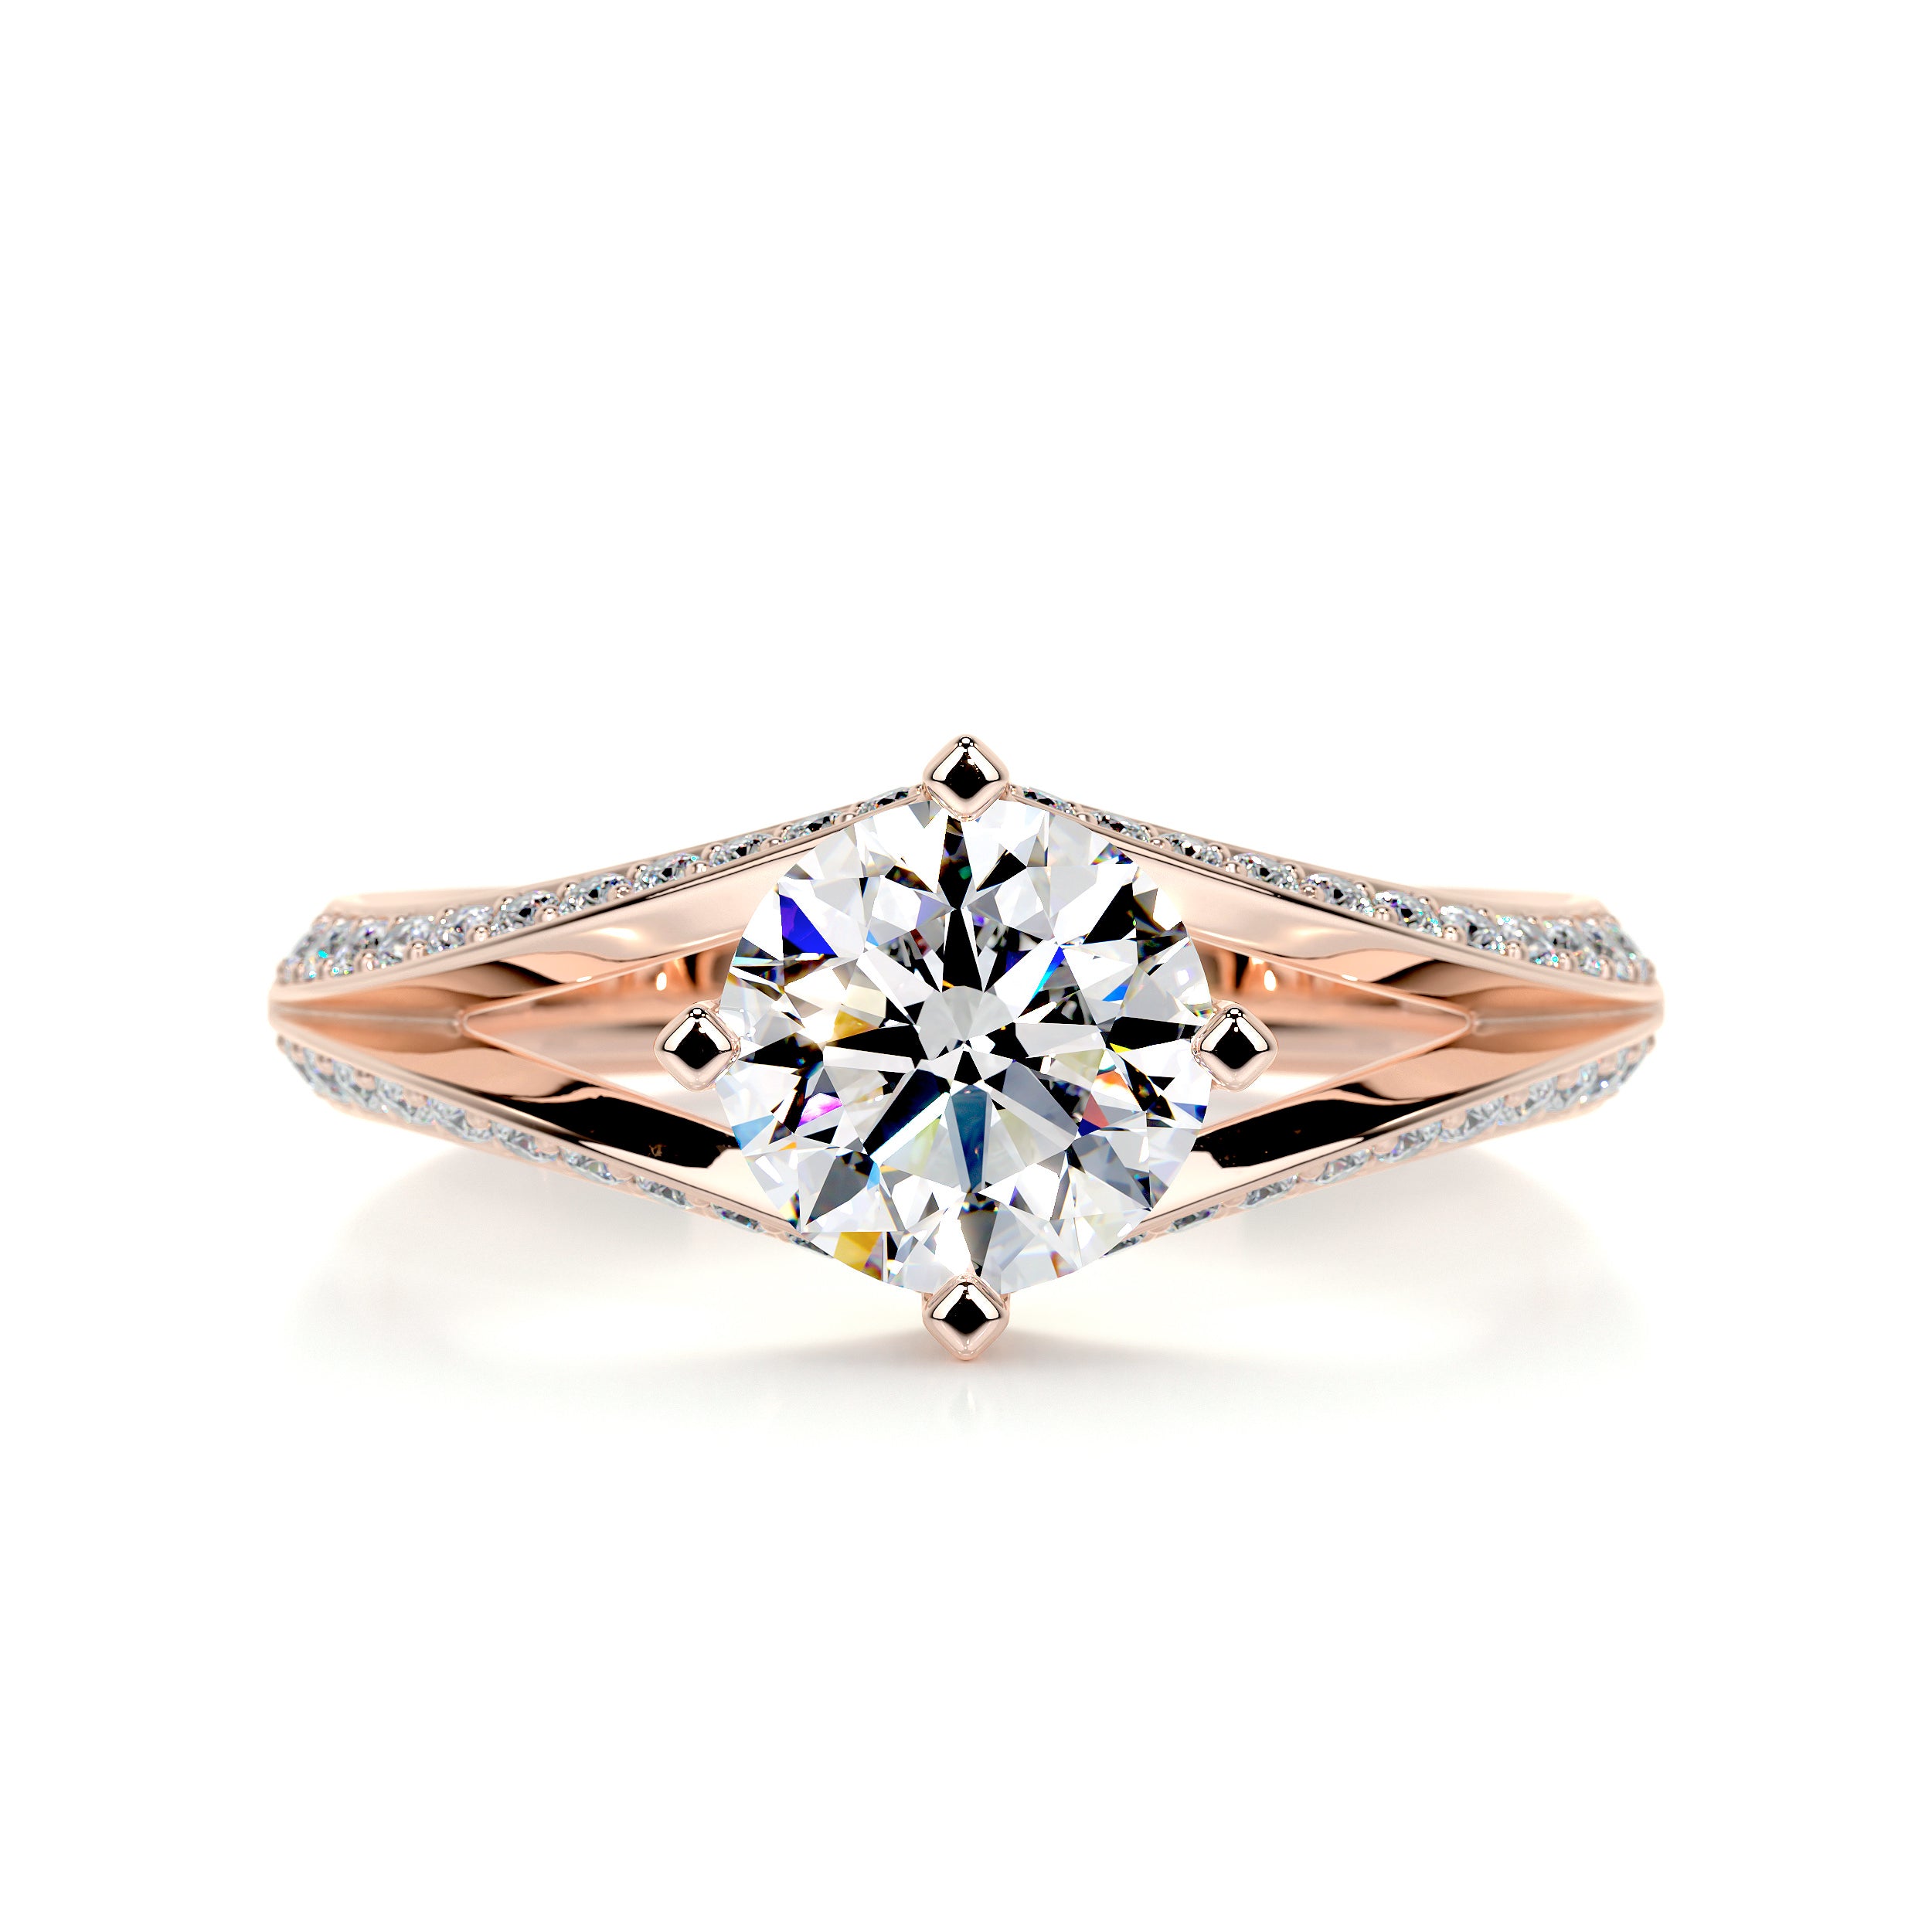 Harlow Moissanite & Diamonds Ring   (2.5 Carat) -14K Rose Gold